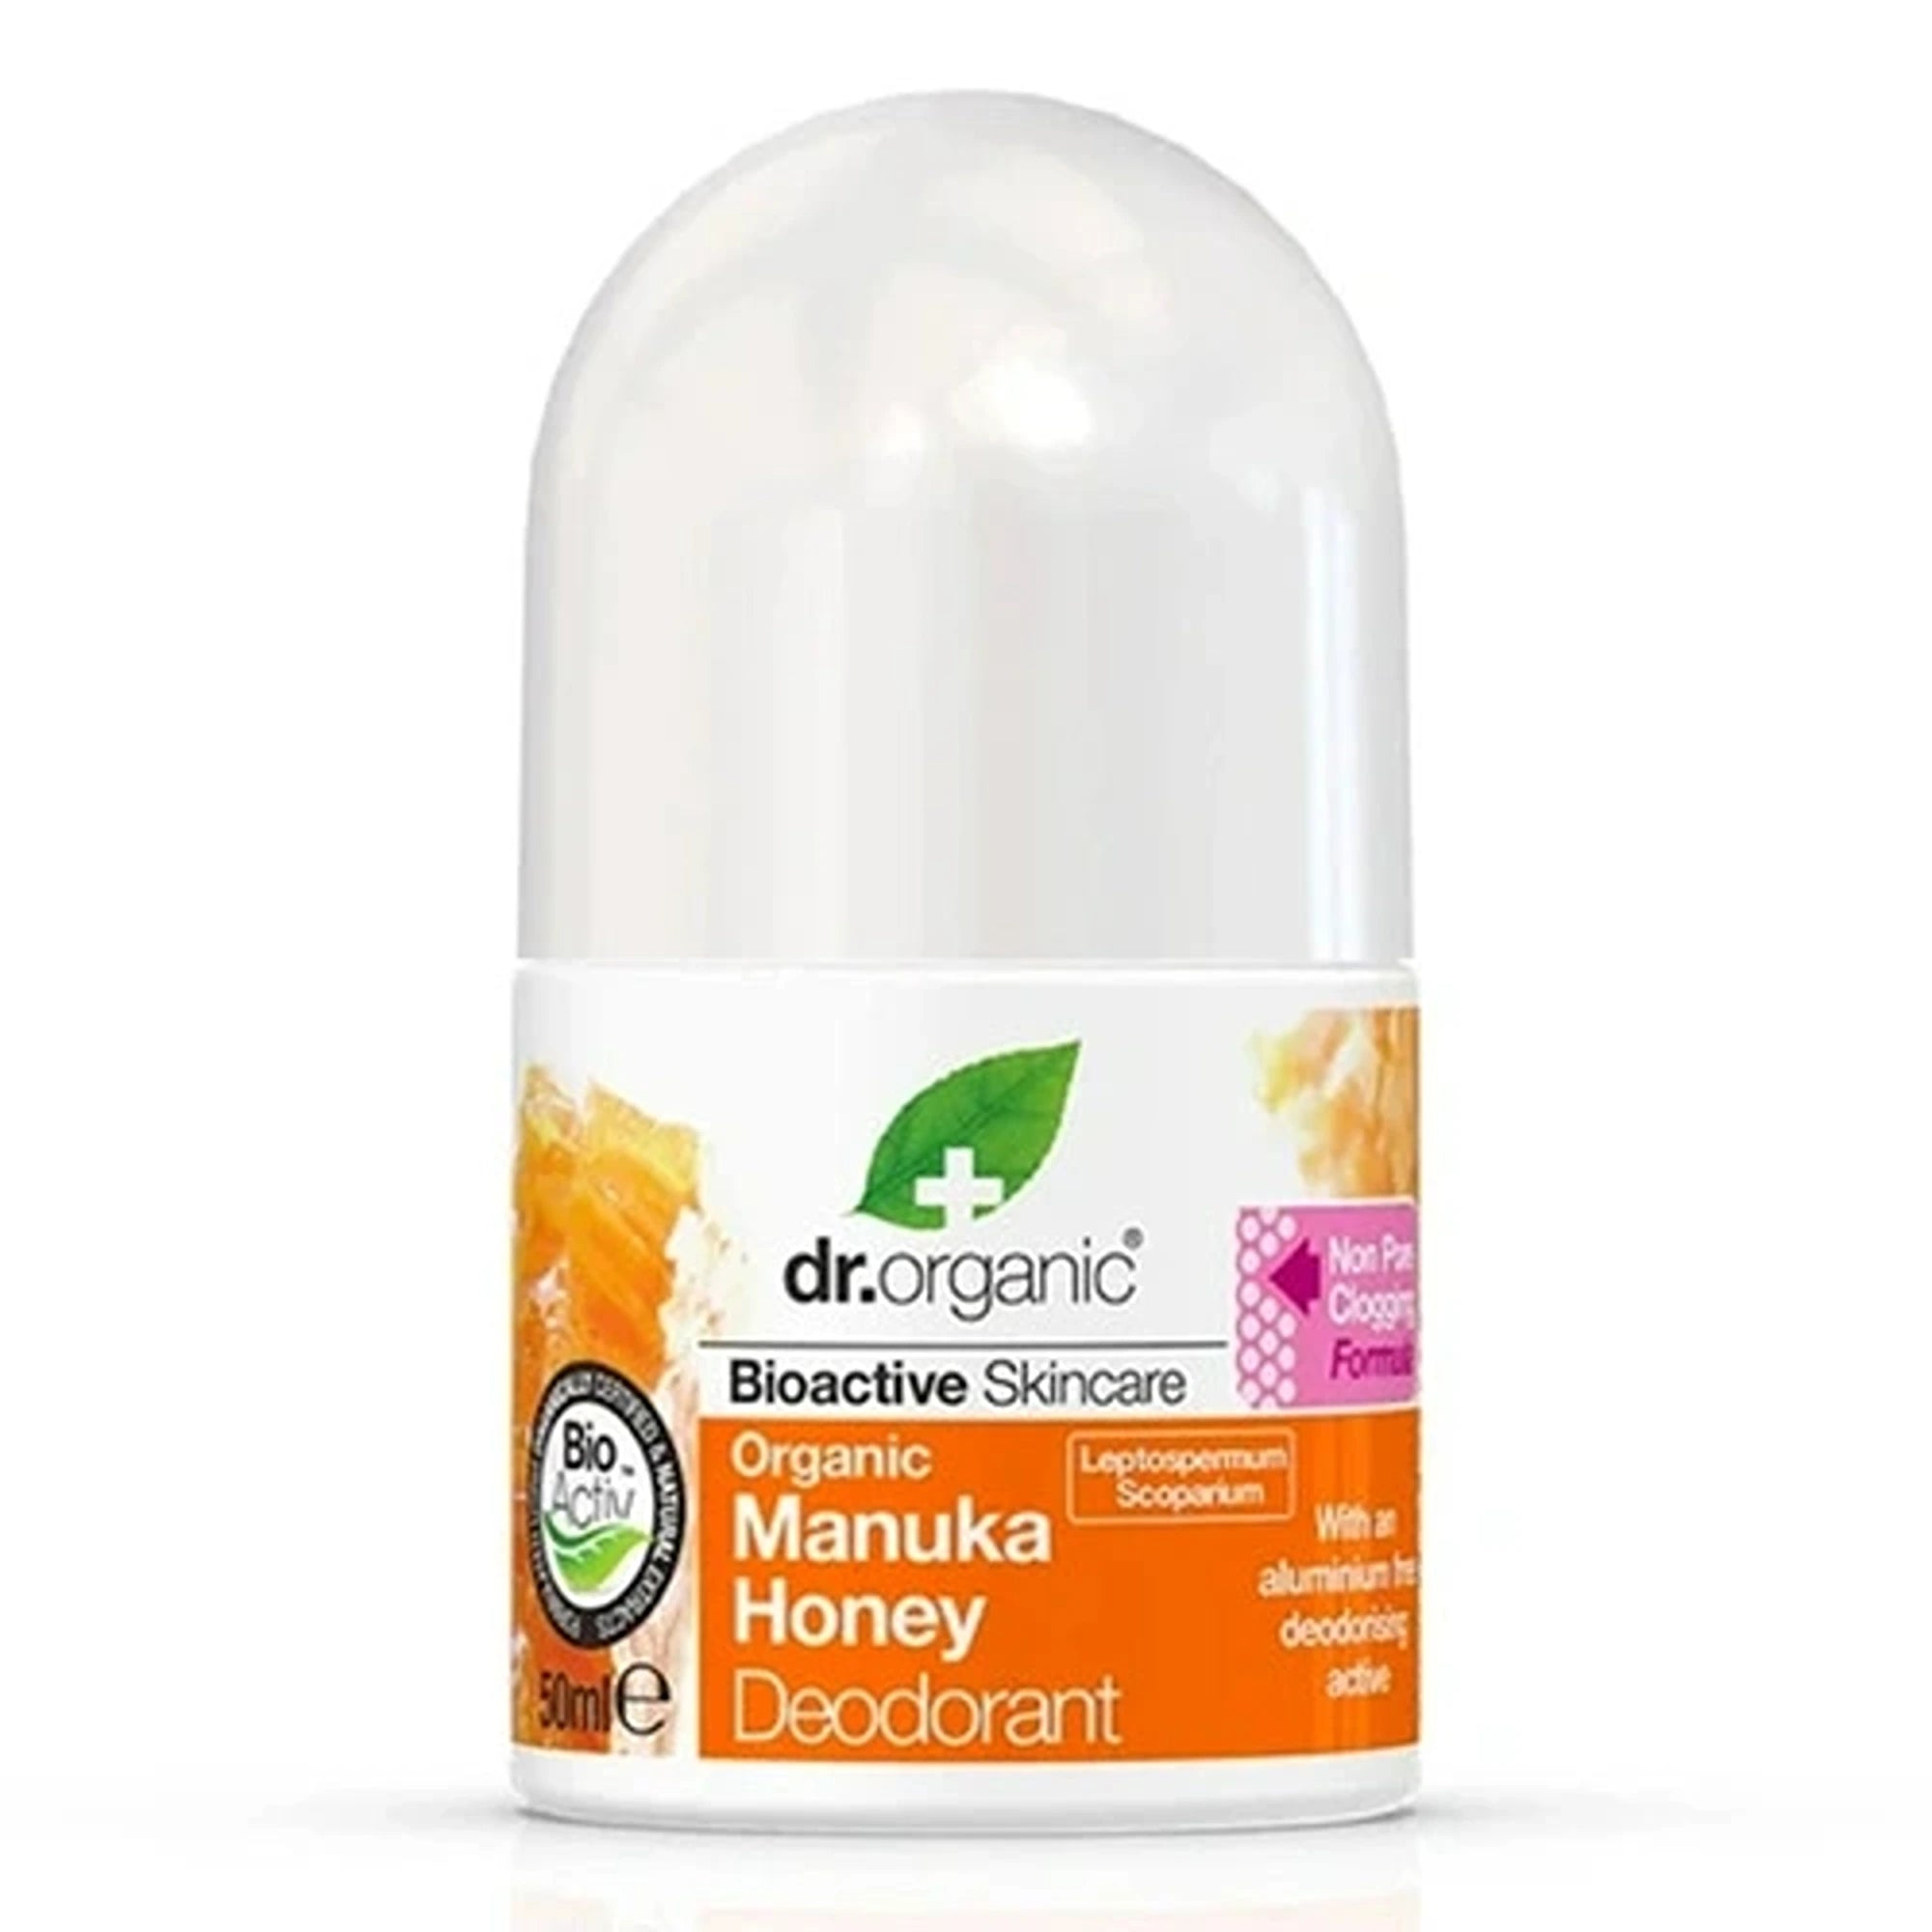 Dr Organic Manuka Honey Deodorant